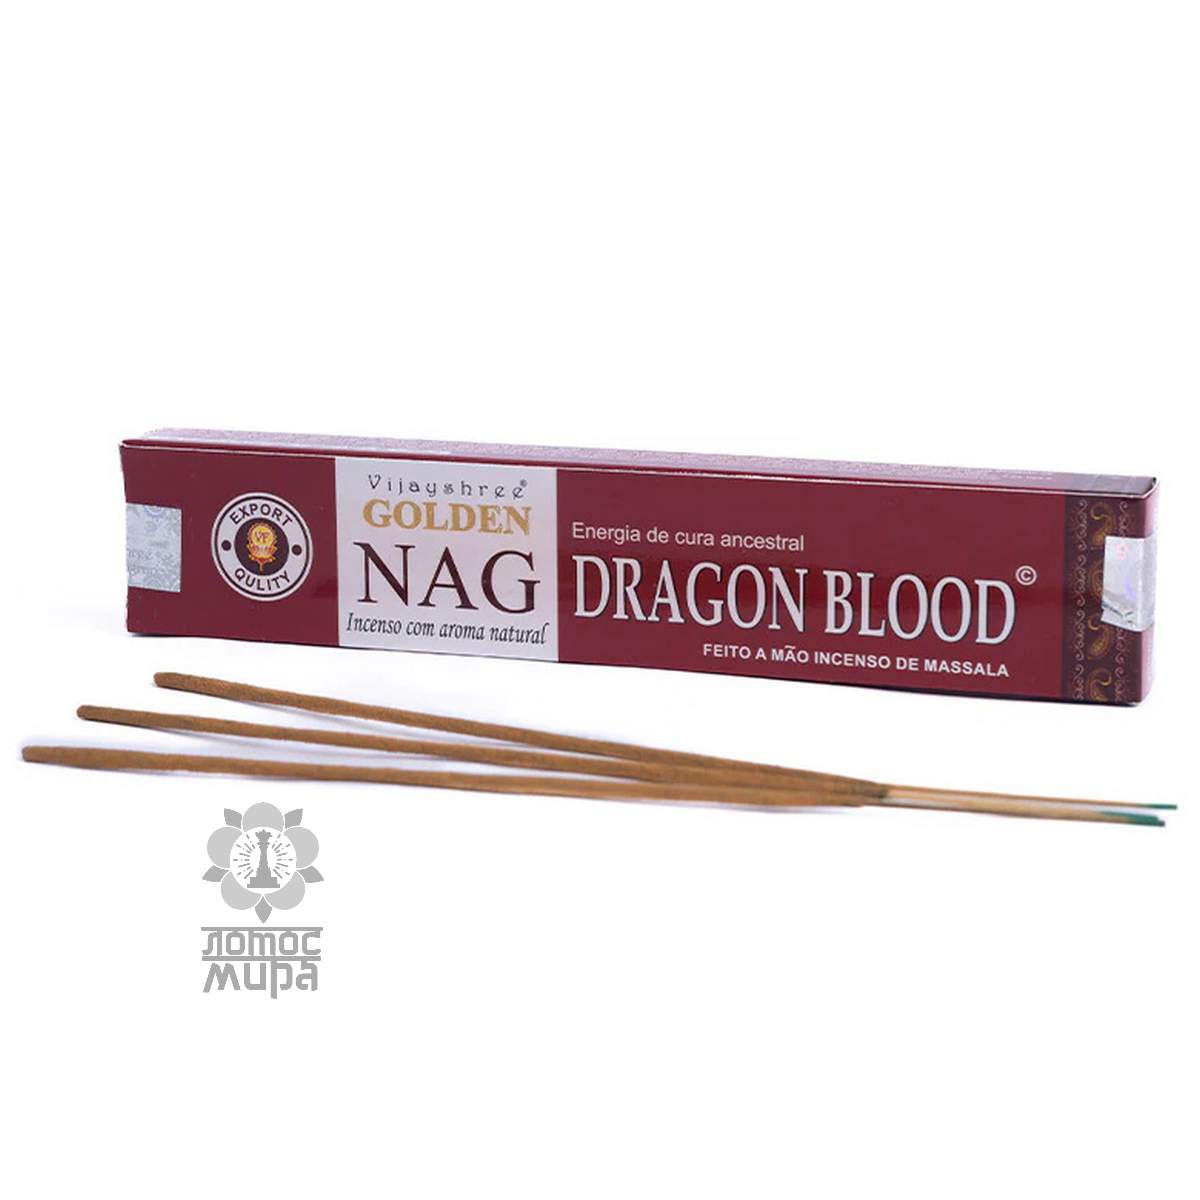 Golden Nag Dragon blood 15g Vijashree